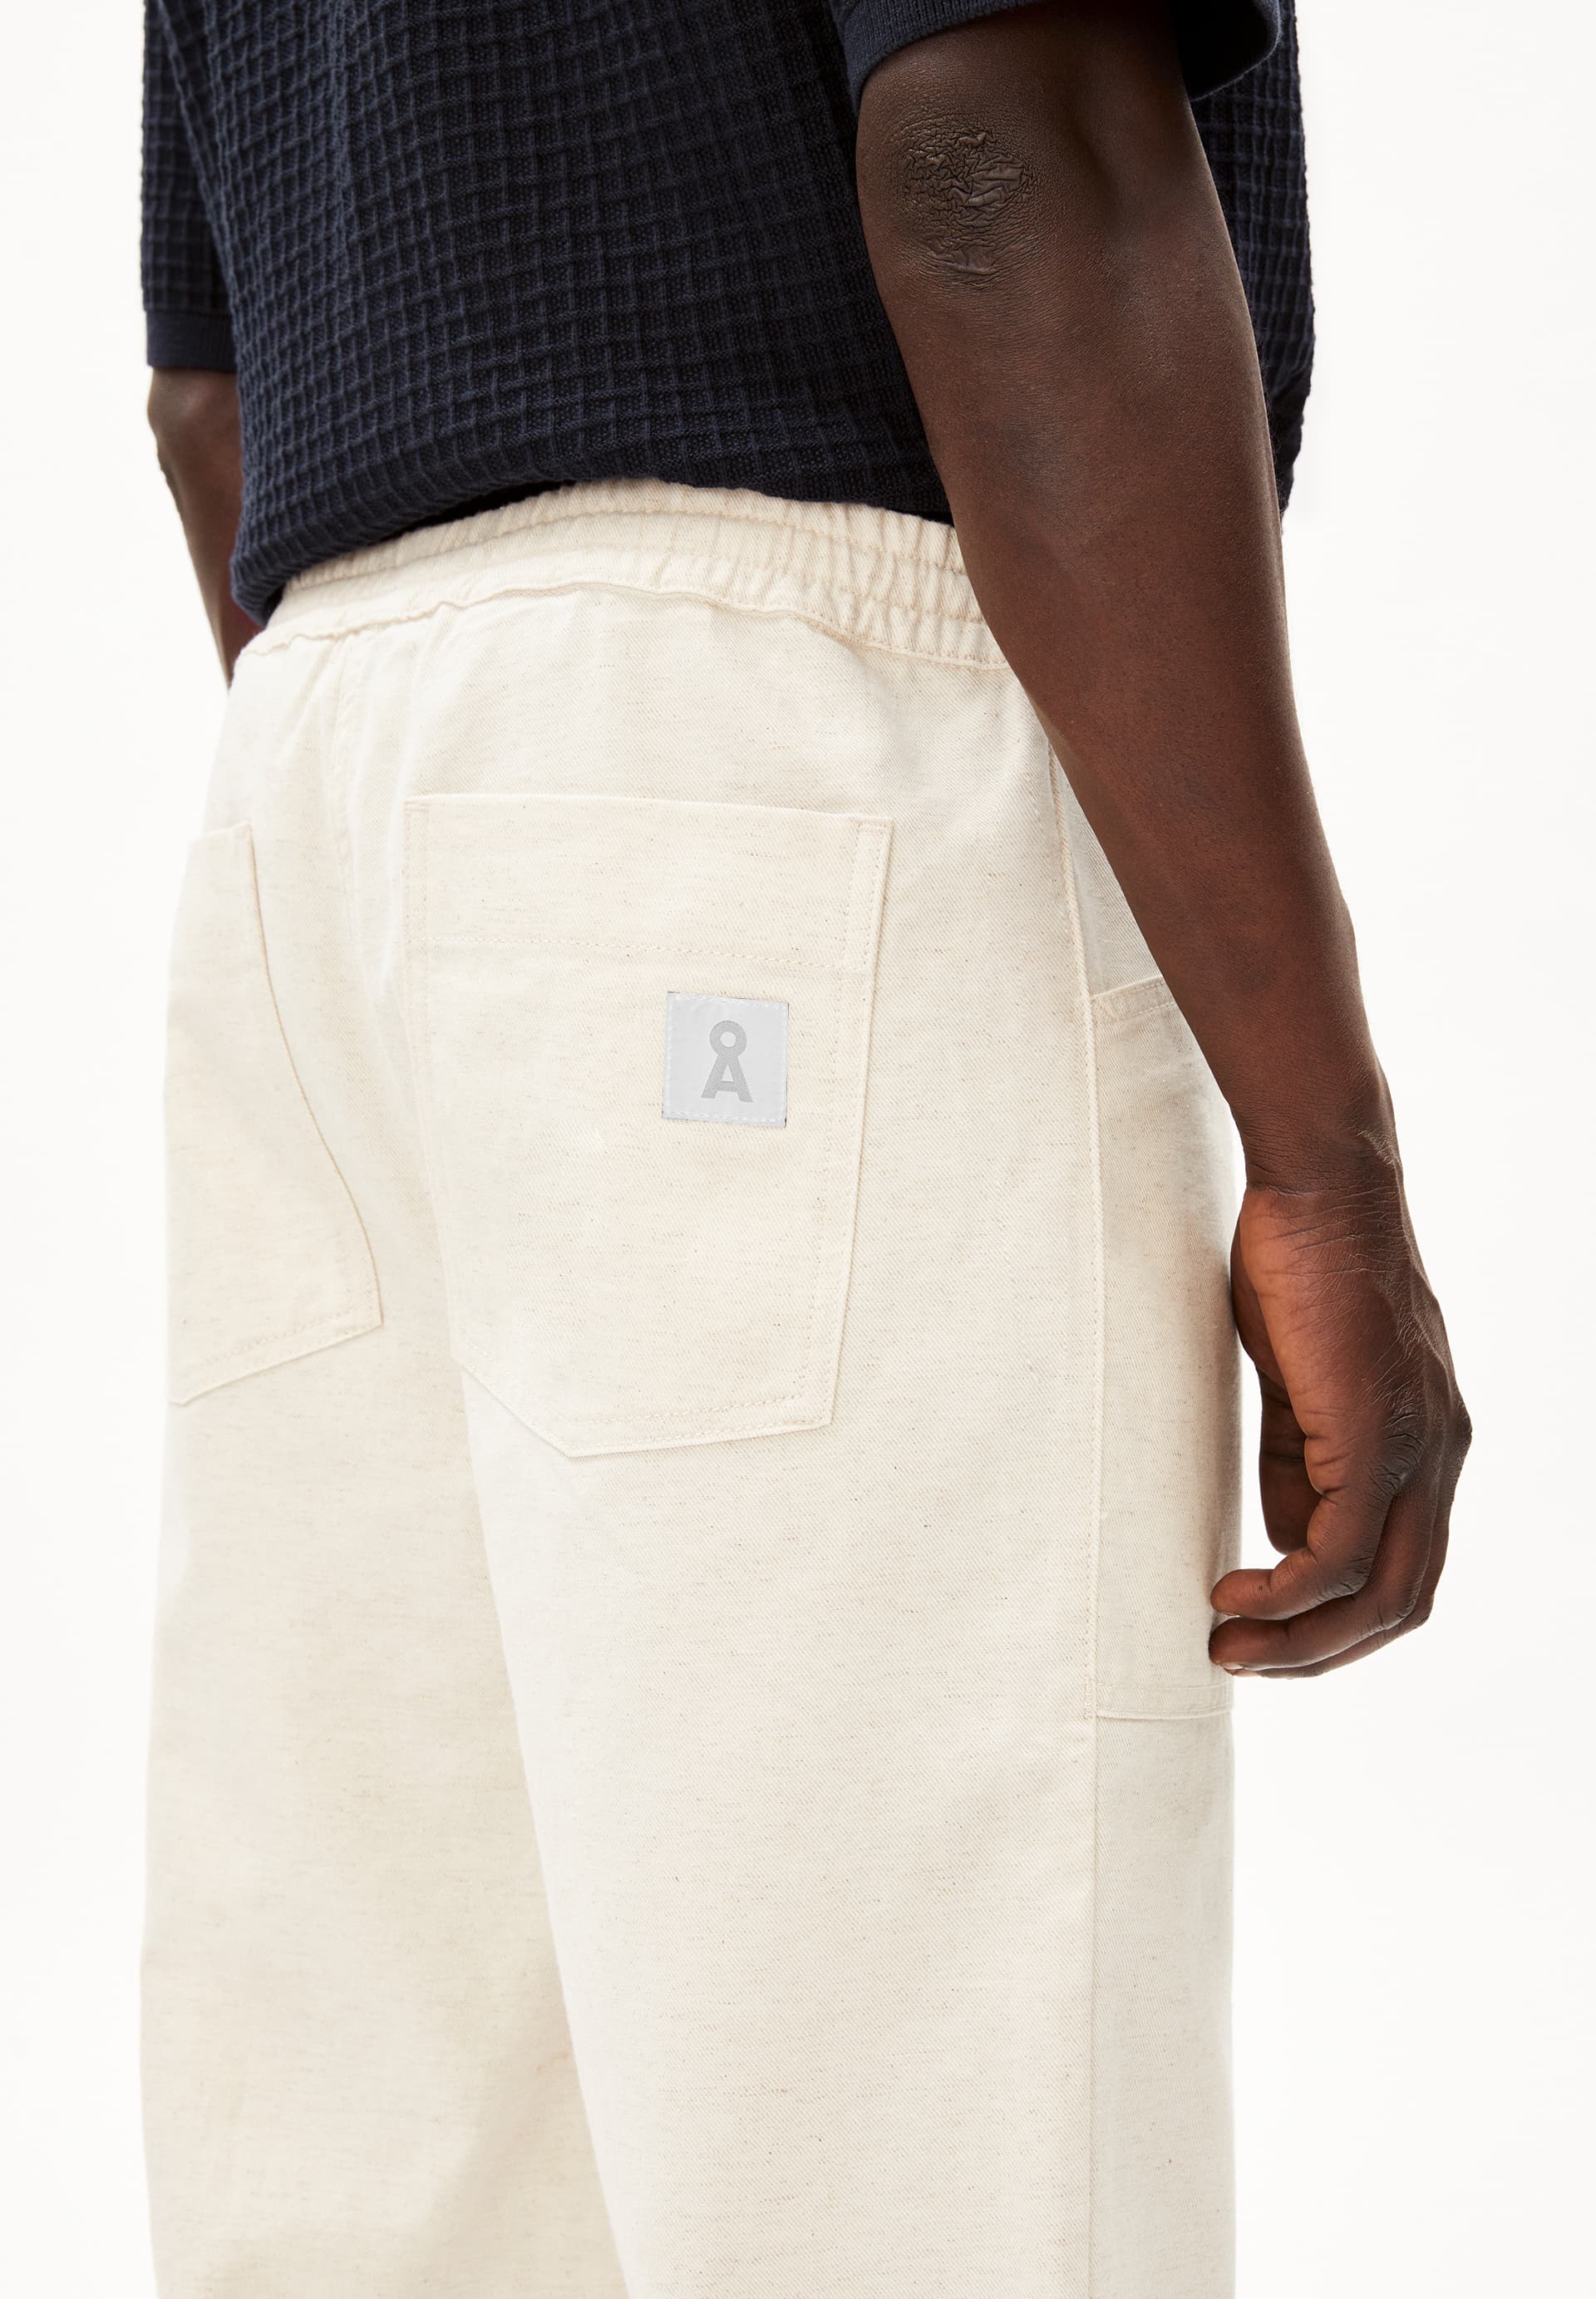 FAABIEN Woven Pants made of Linen-Mix